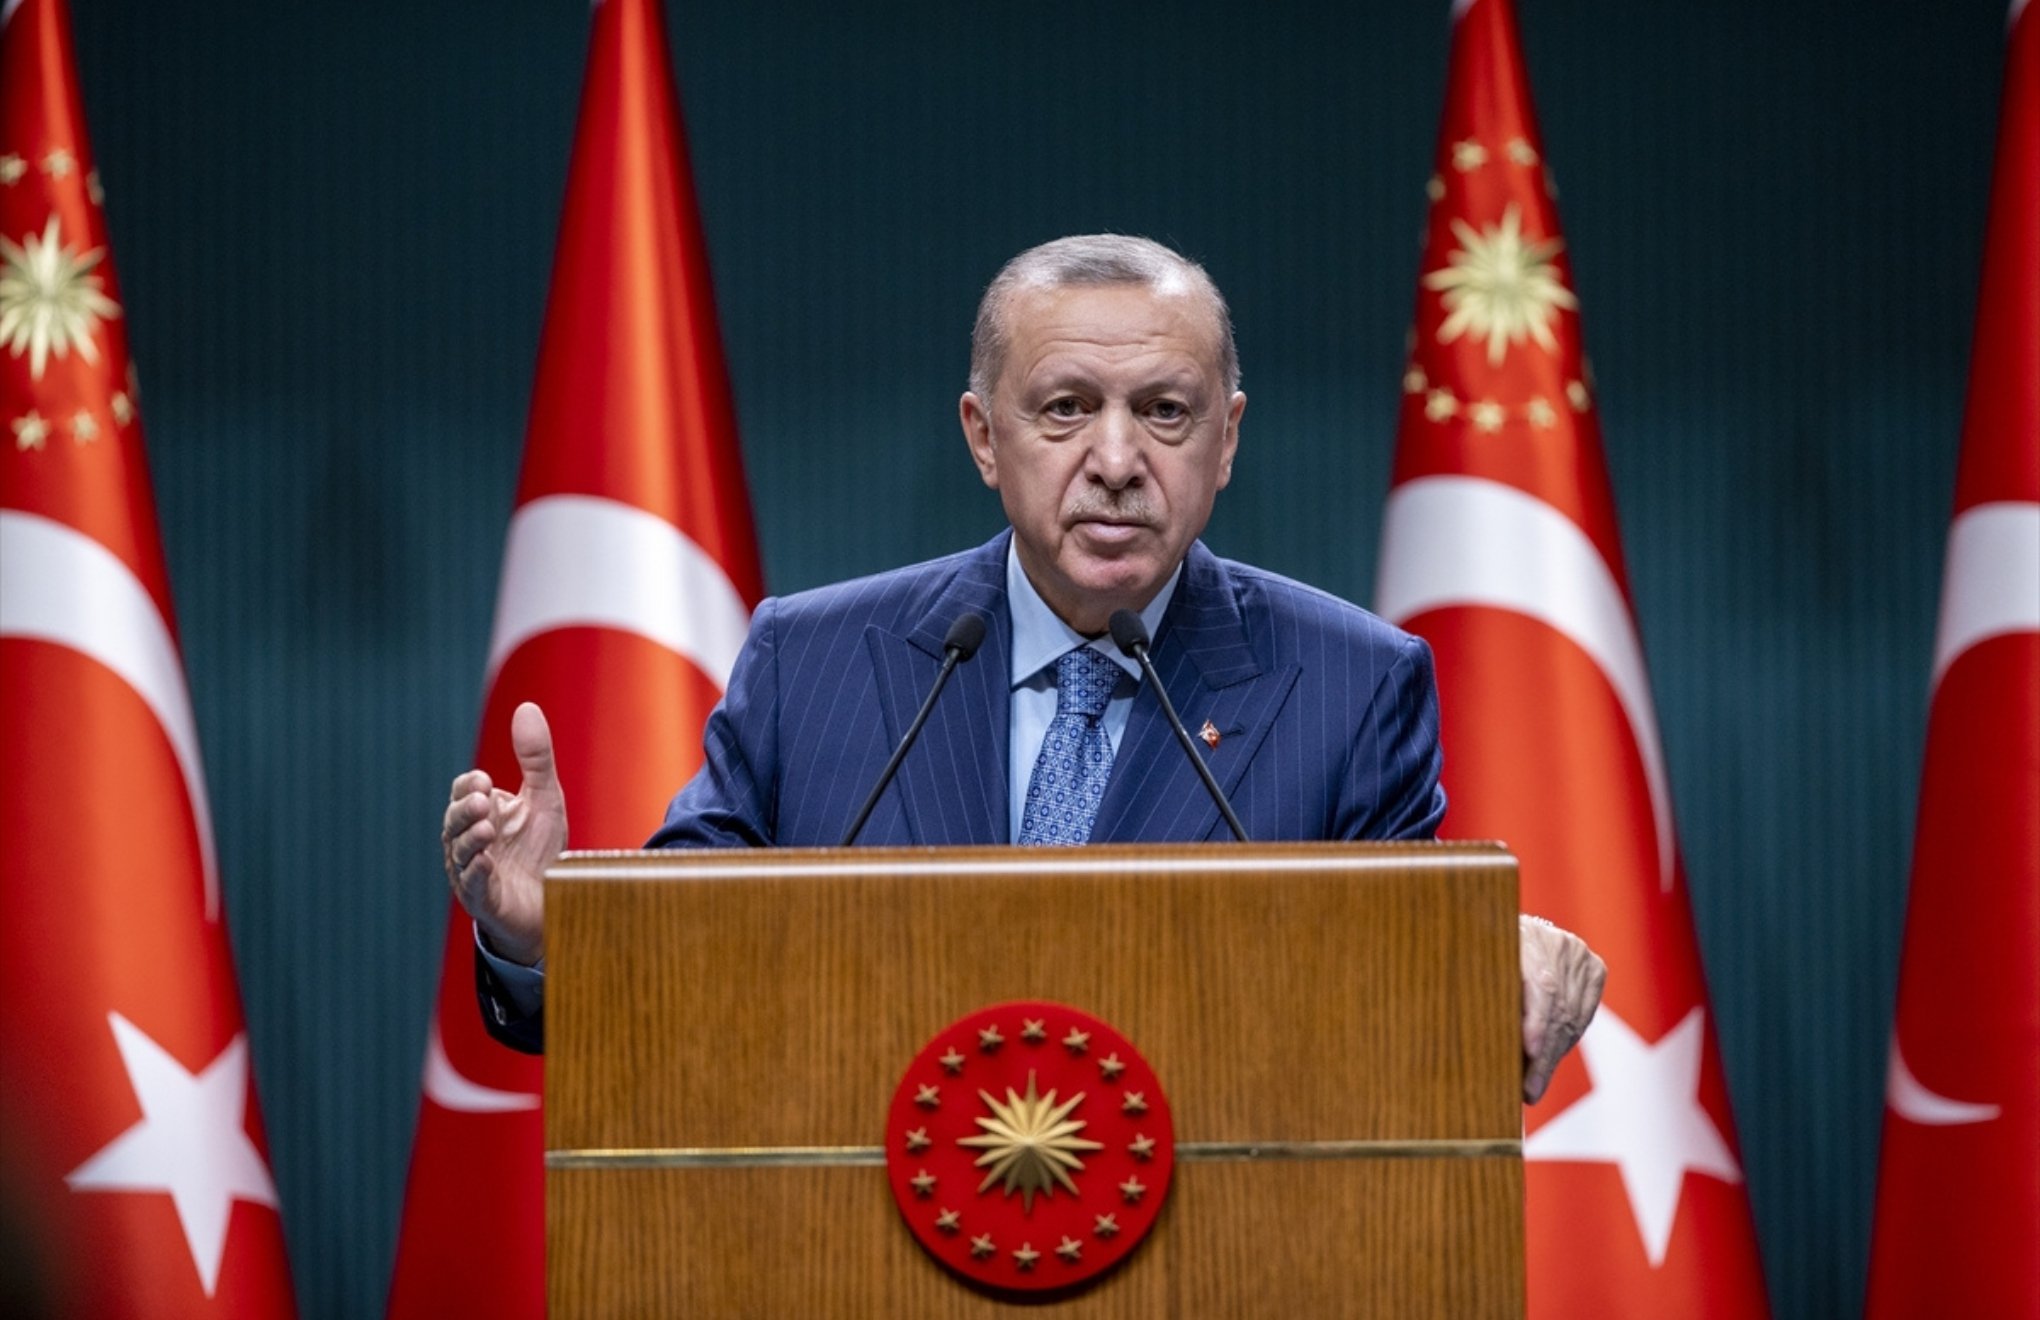 Erdoganî bi şûn de gav avêt: Armanca me ne çêkirina krîzê ye